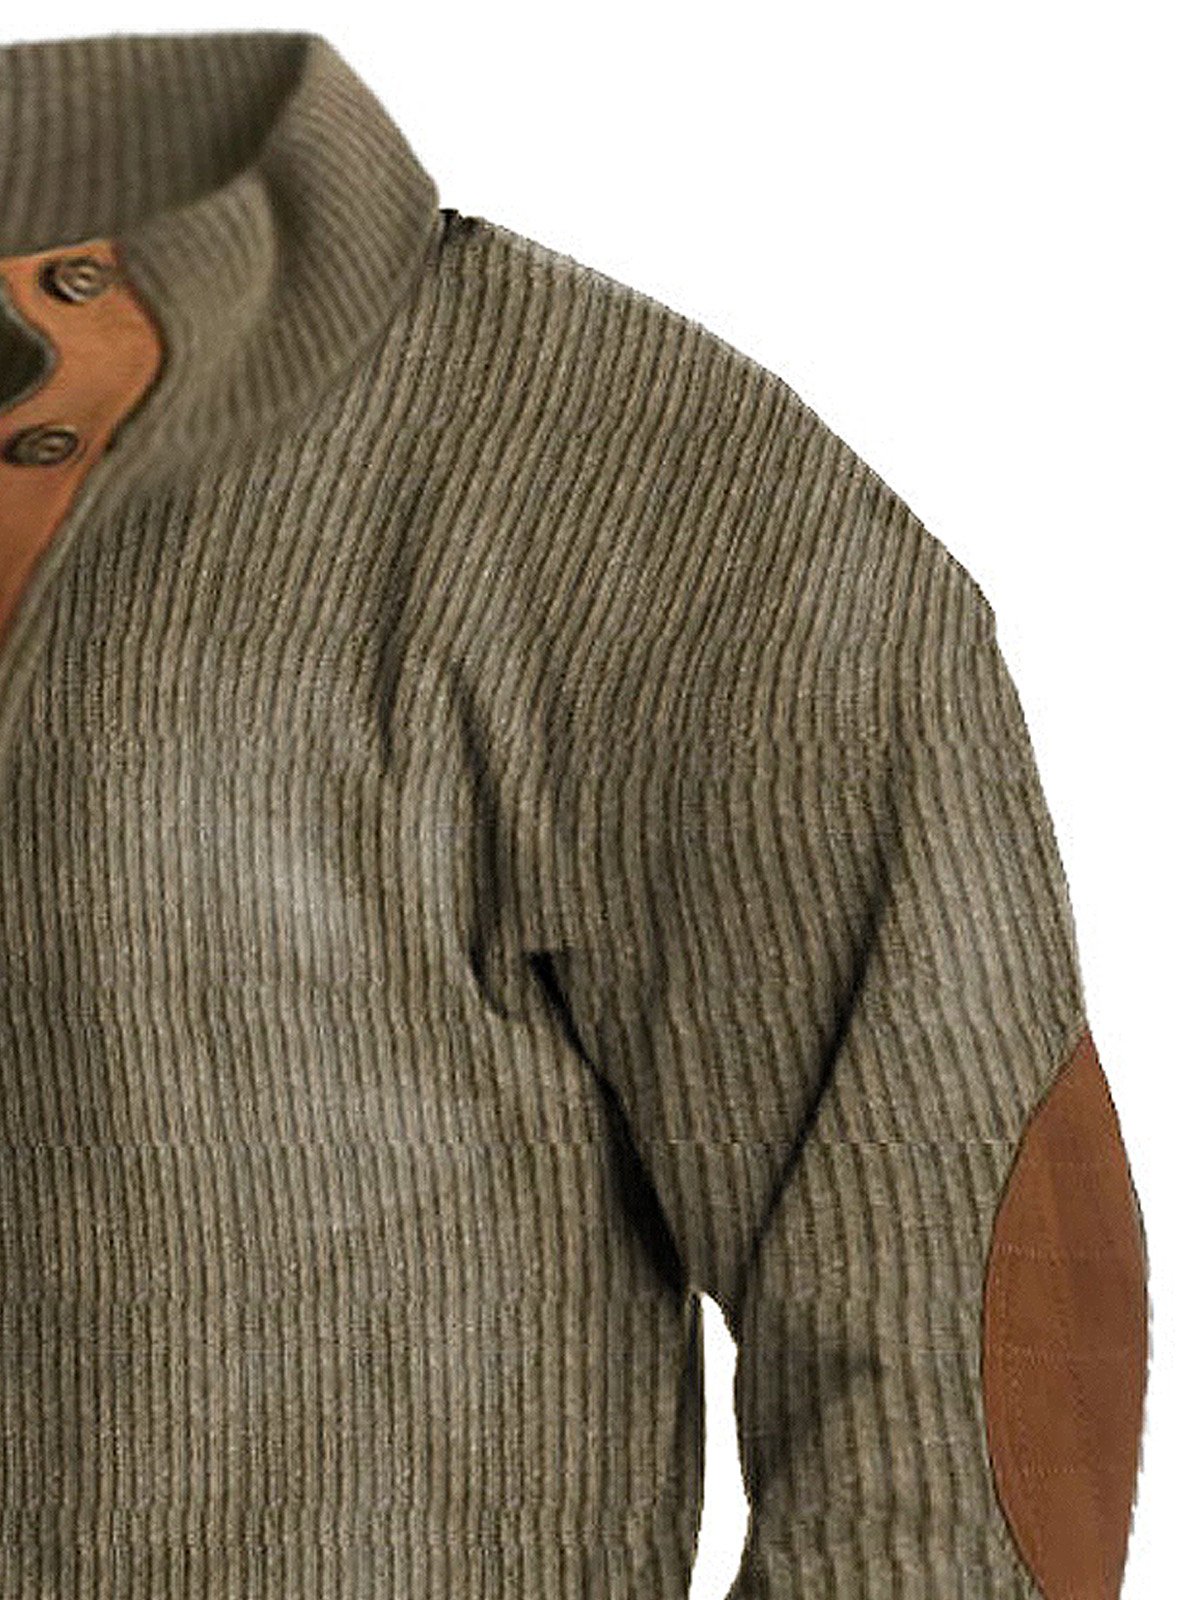 JoyMitty Men's Basic Corduroy Vintage Button Hoodie